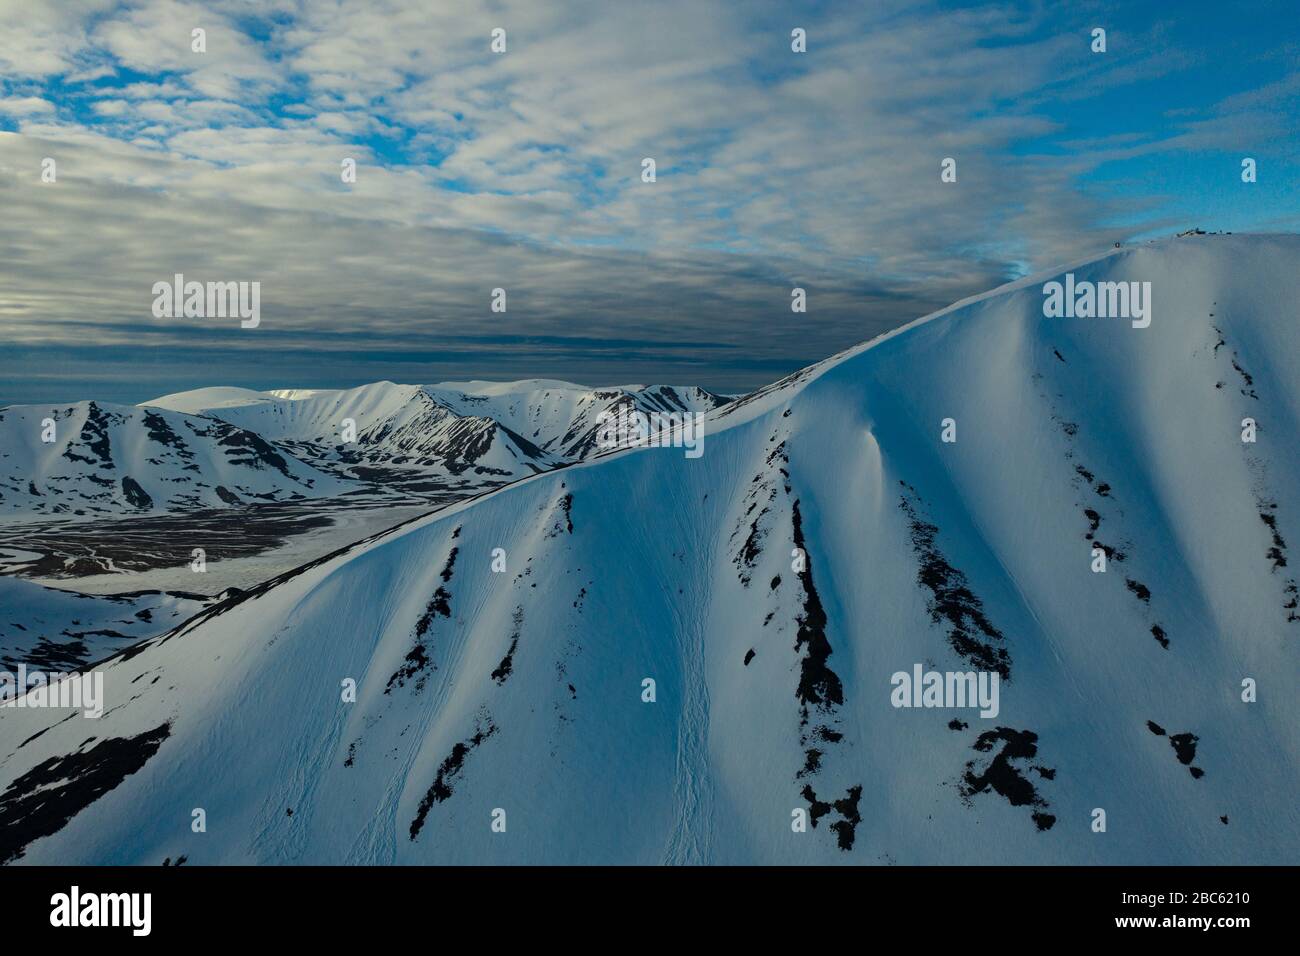 Les pentes des montagnes sont recouvertes de neige par temps nuageux. Lieu de tournage sur la côte nord de la mer de Béring, région de Chukchi, Russie. Banque D'Images